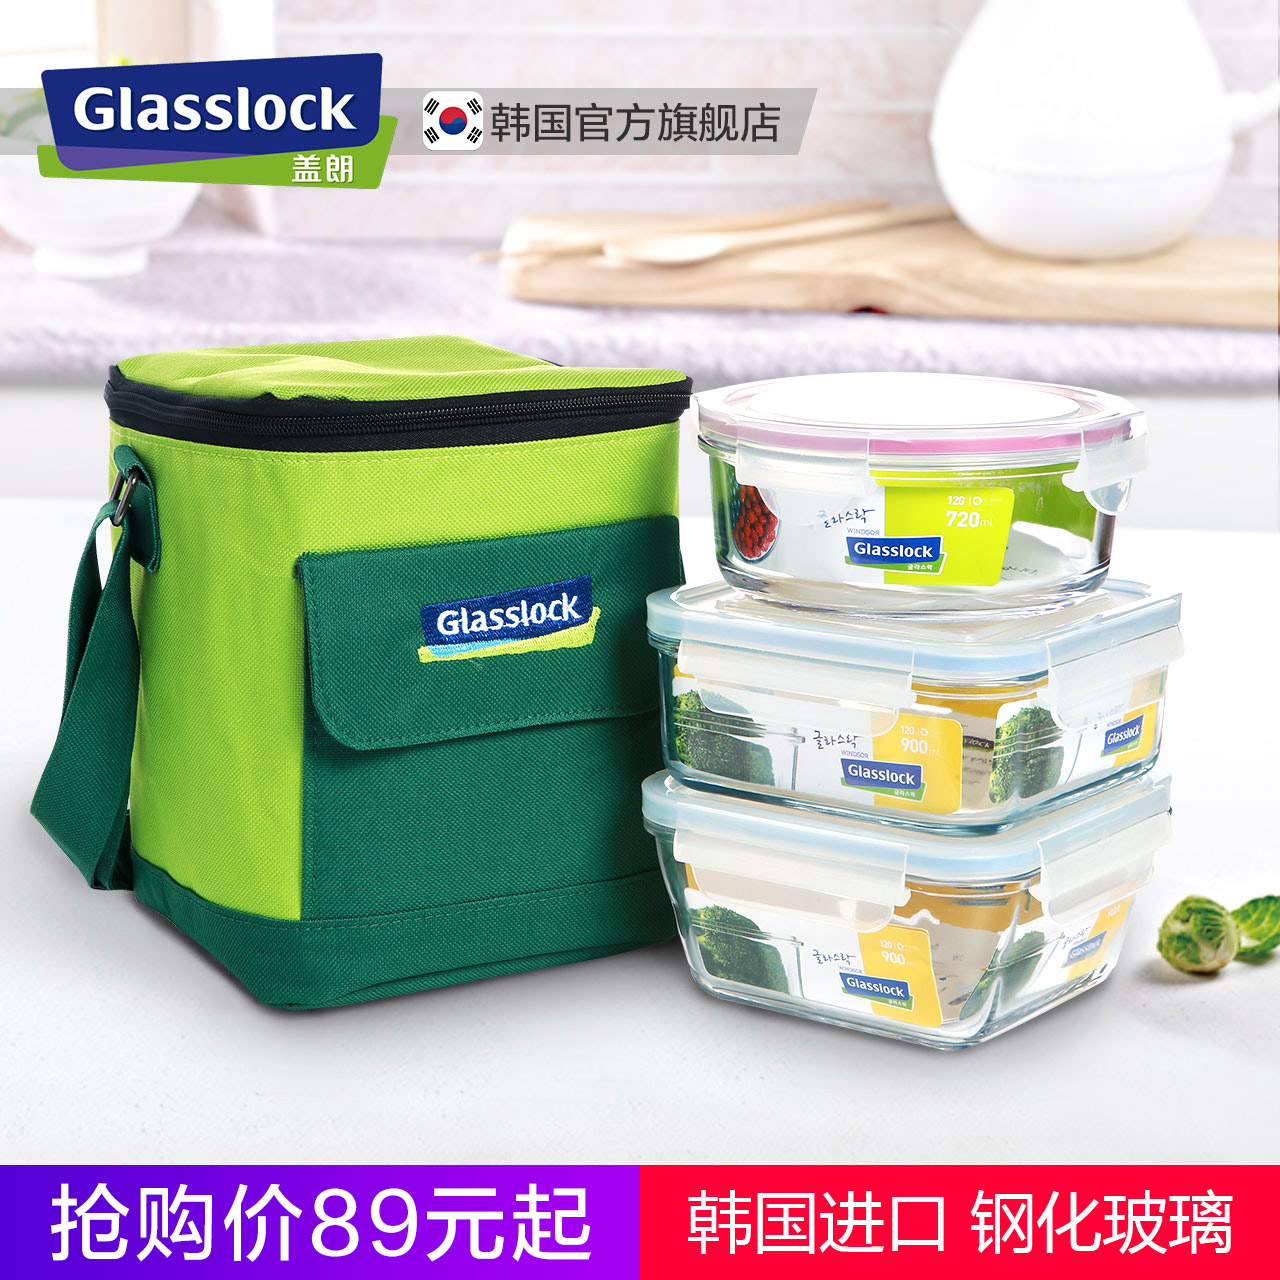 Glasslock韩国进口钢化玻璃保鲜盒微波炉耐热密封盒便当饭盒套装